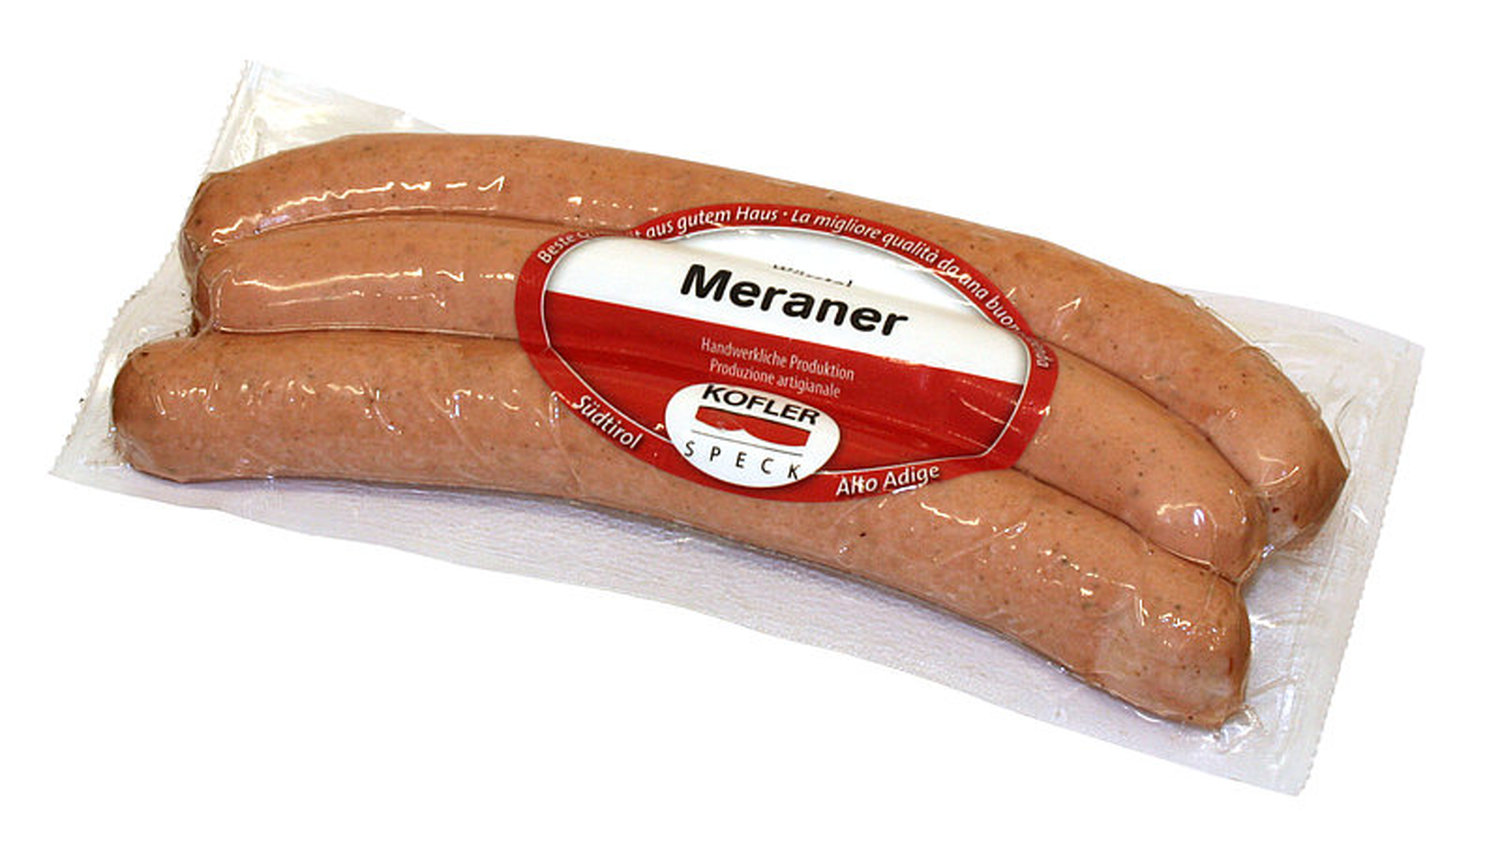 Meraner Hauswurst 2 Stück vac. ca. 270 gr. - Kofler Delikatessen